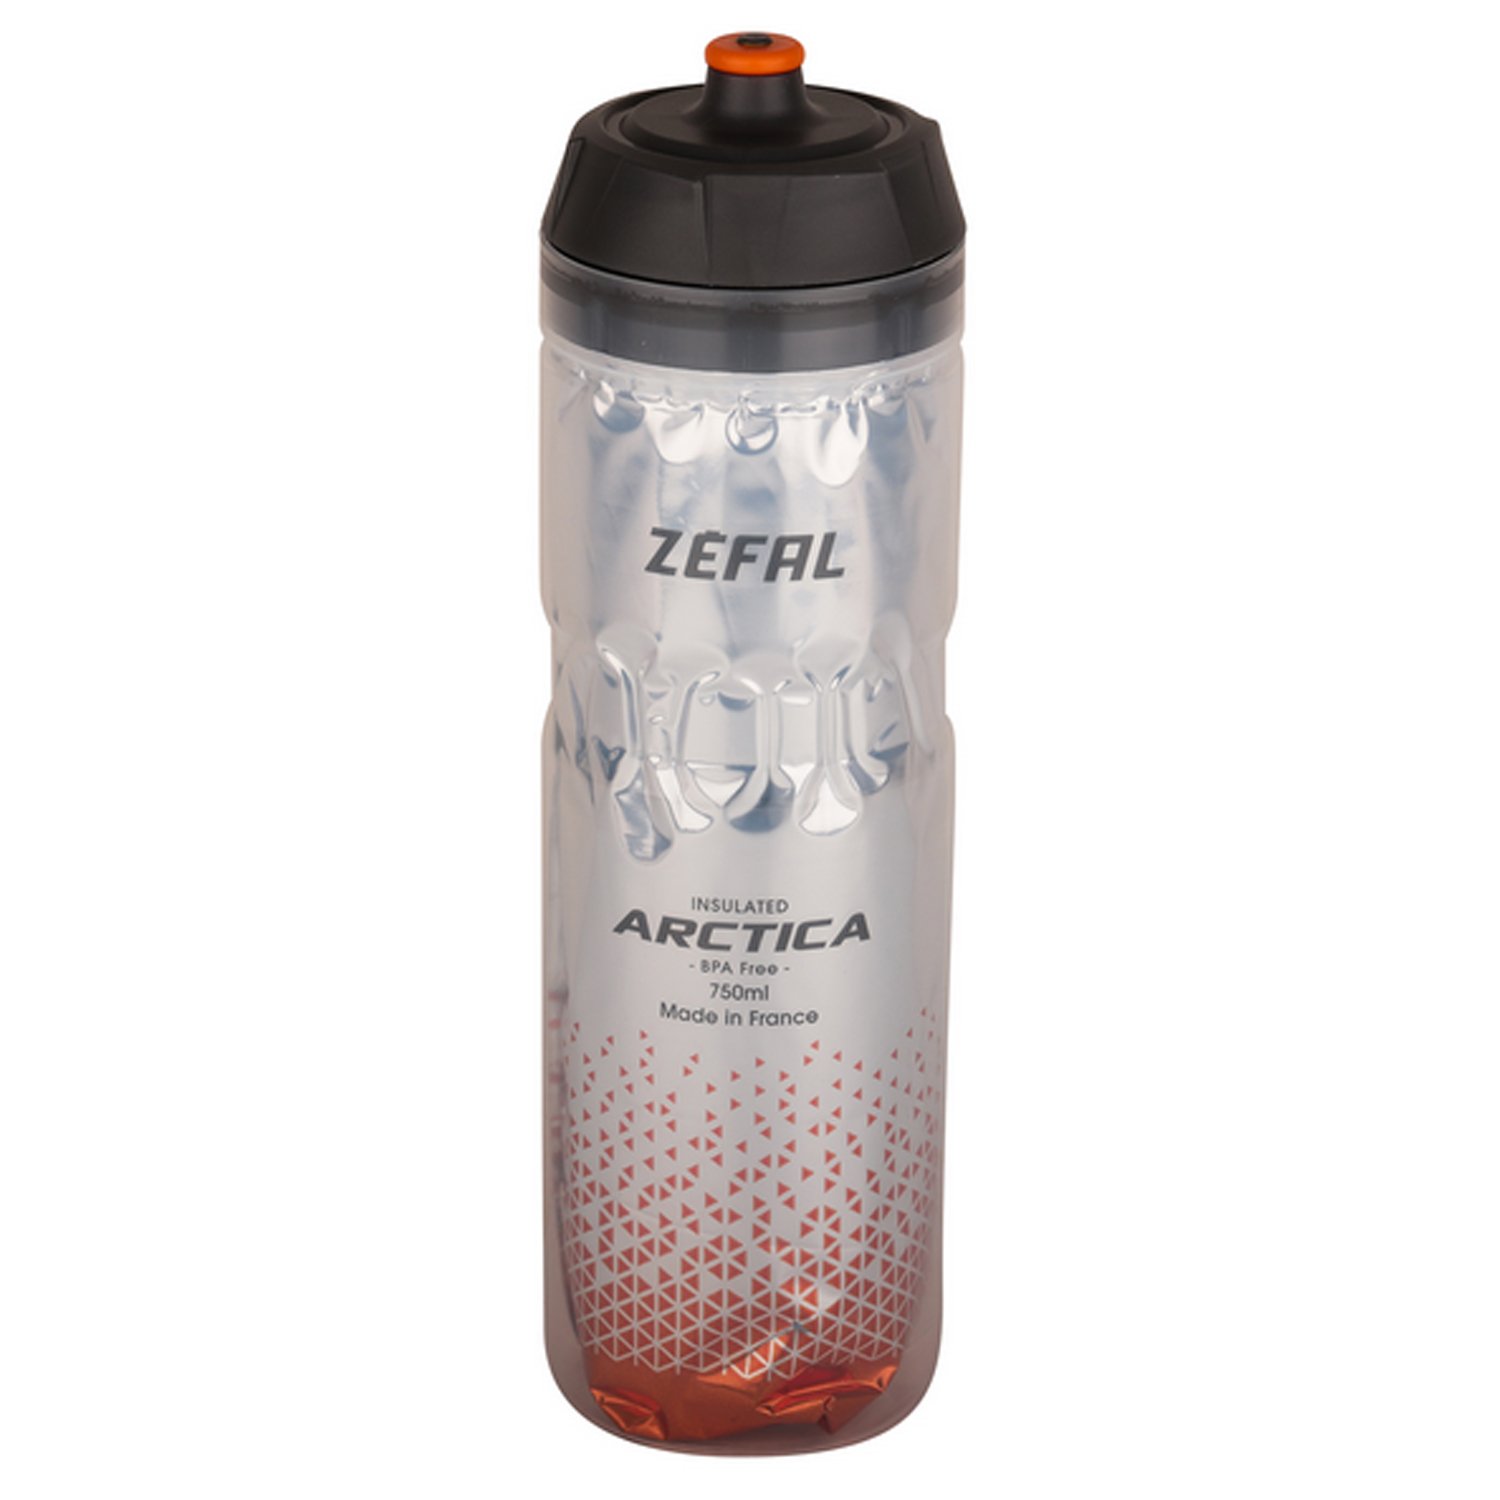 Термофляга велосипедная Zefal Arctica 75 Bottle, пластик, 750 мл, оранжевый/серый, 2023, 1674 флягодержатель велосипедный zefal pulse a2 bottle cage пластик оранжевый синий 2023 1765